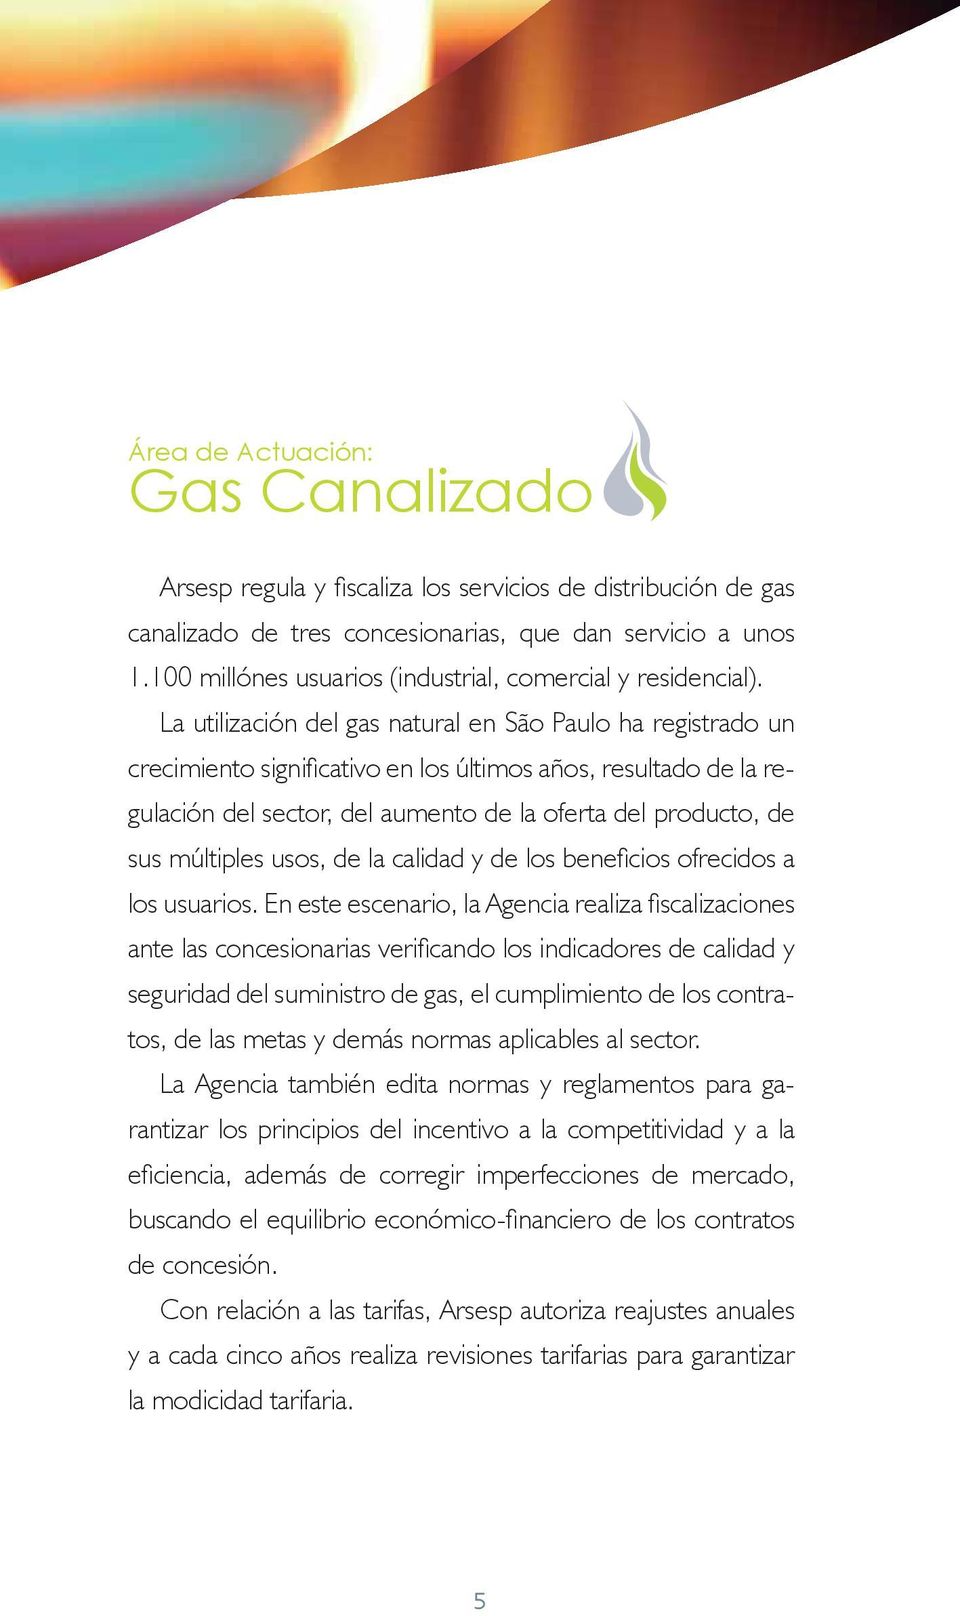 La utilización del gas natural en São Paulo ha registrado un crecimiento significativo en los últimos años, resultado de la regulación del sector, del aumento de la oferta del producto, de sus